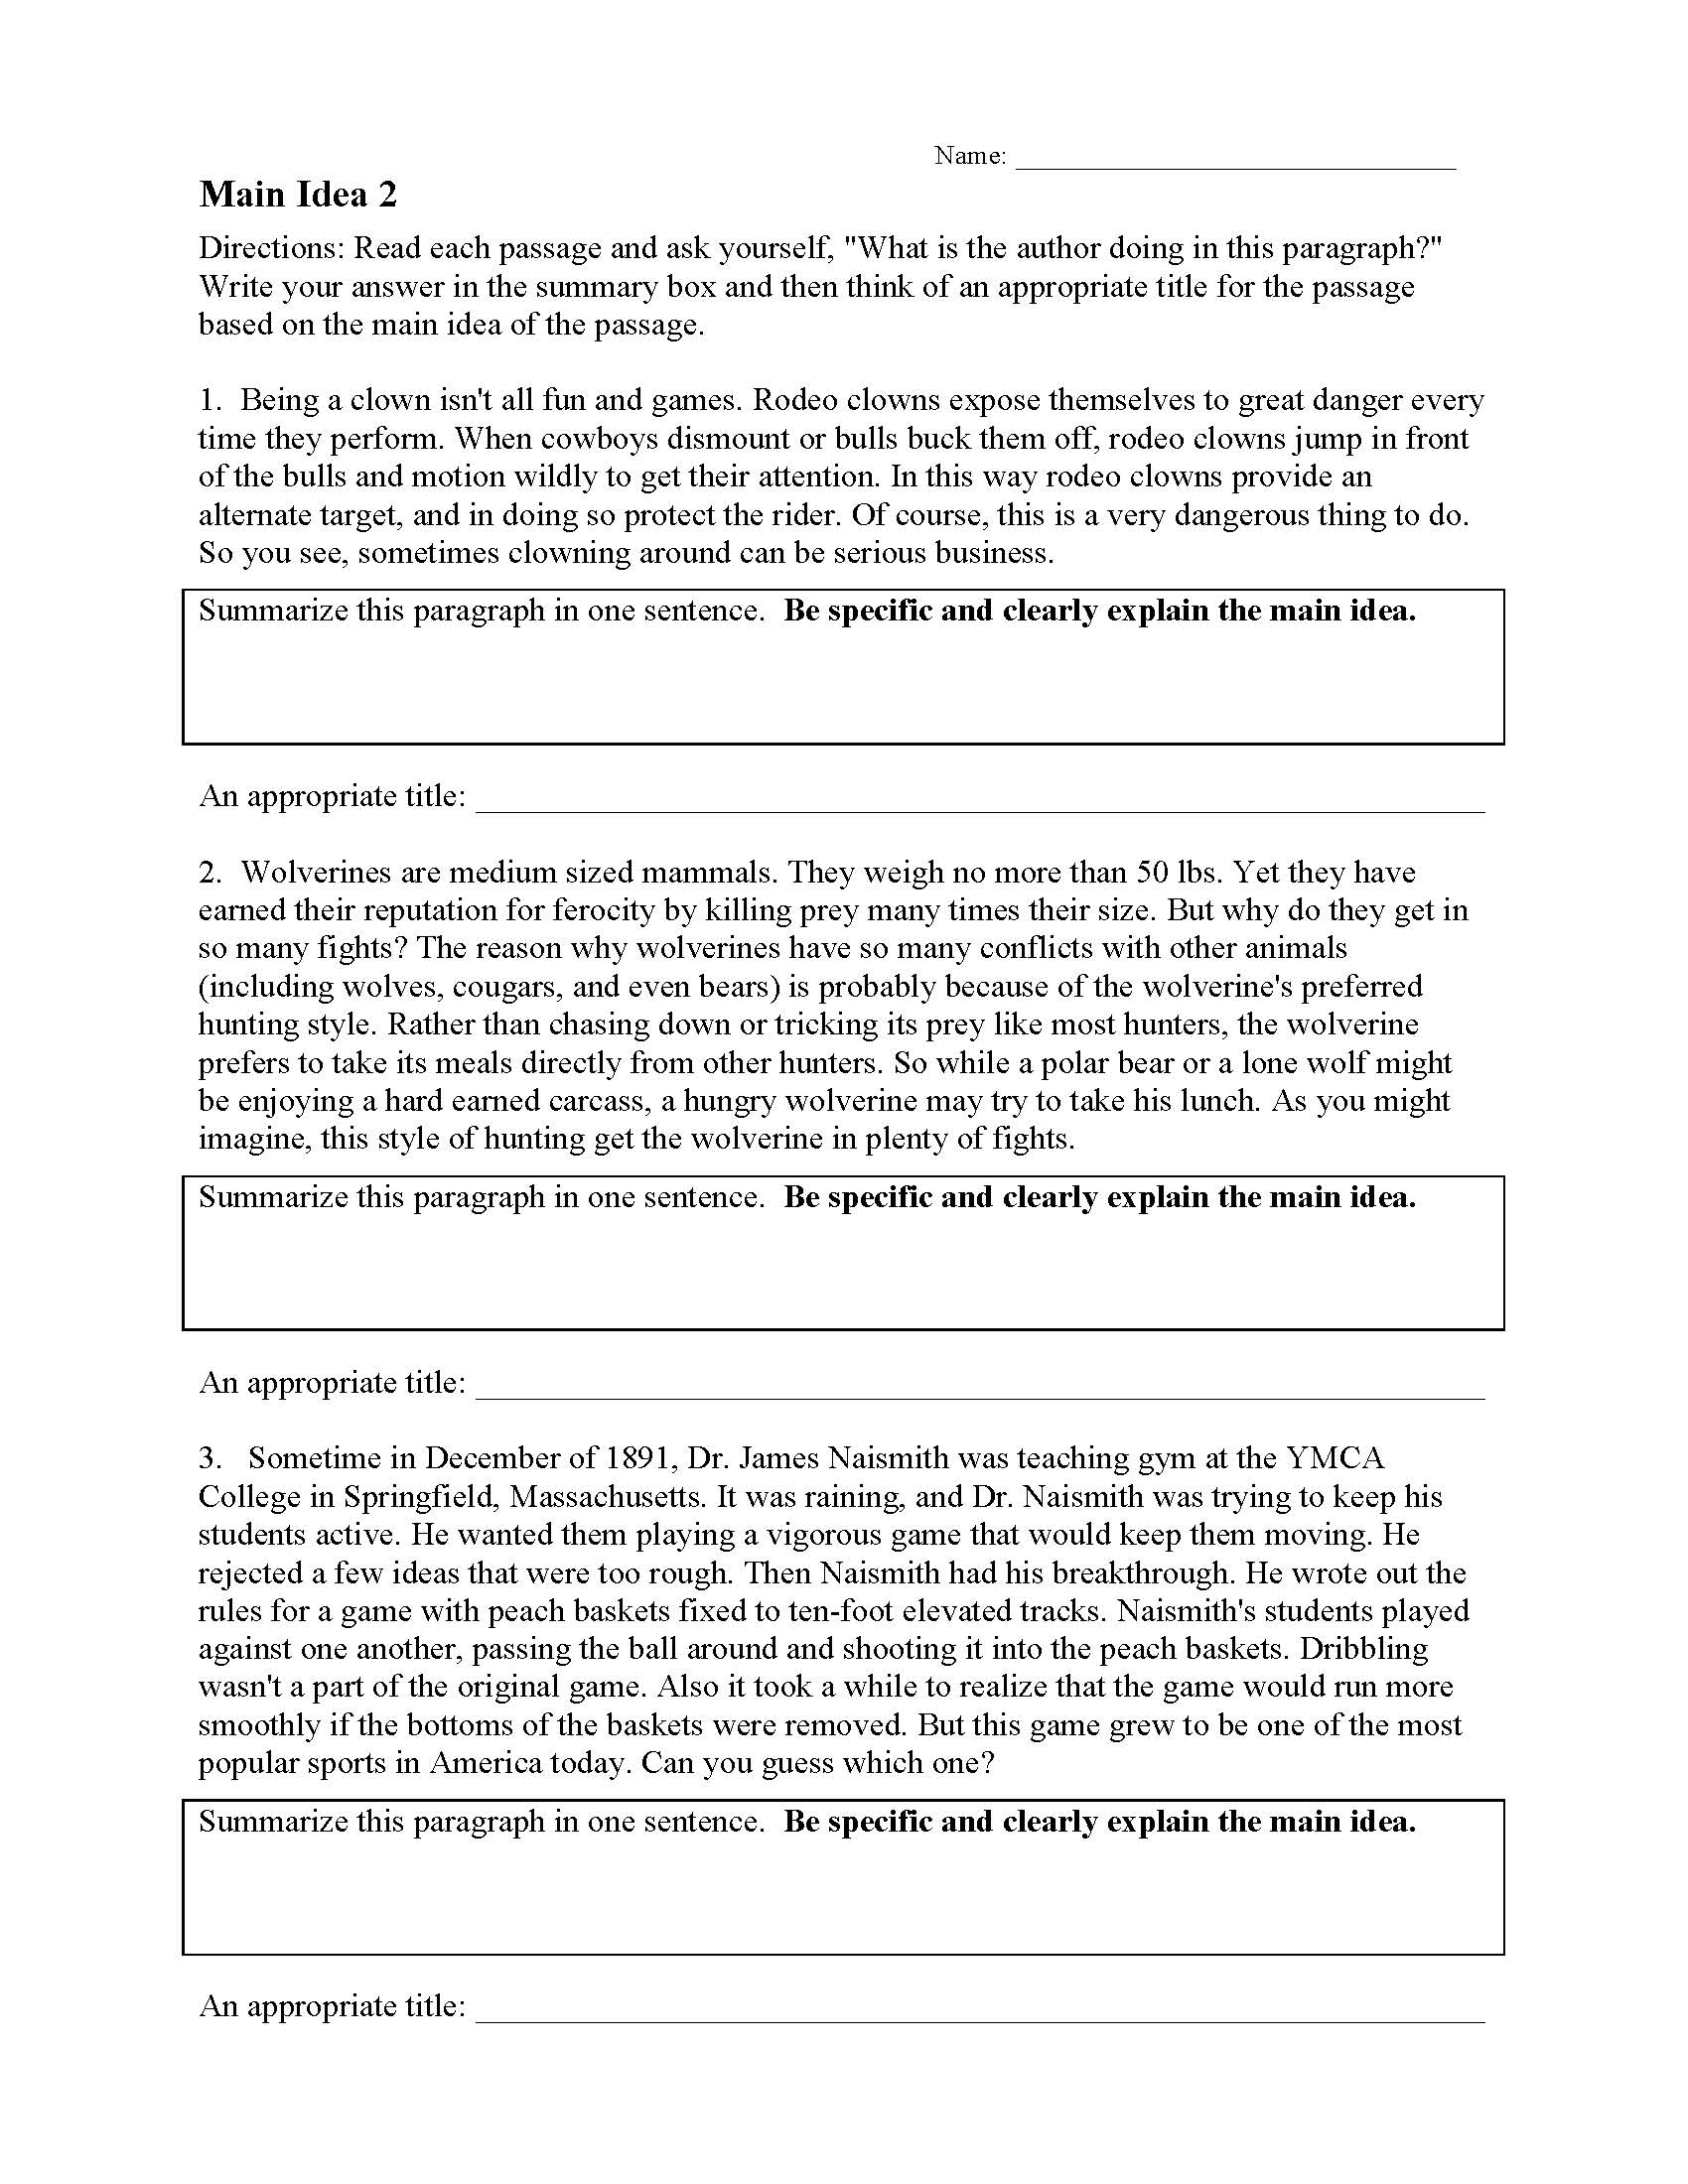 Main Idea Worksheets  Ereading Worksheets Regarding Main Idea Worksheet 5